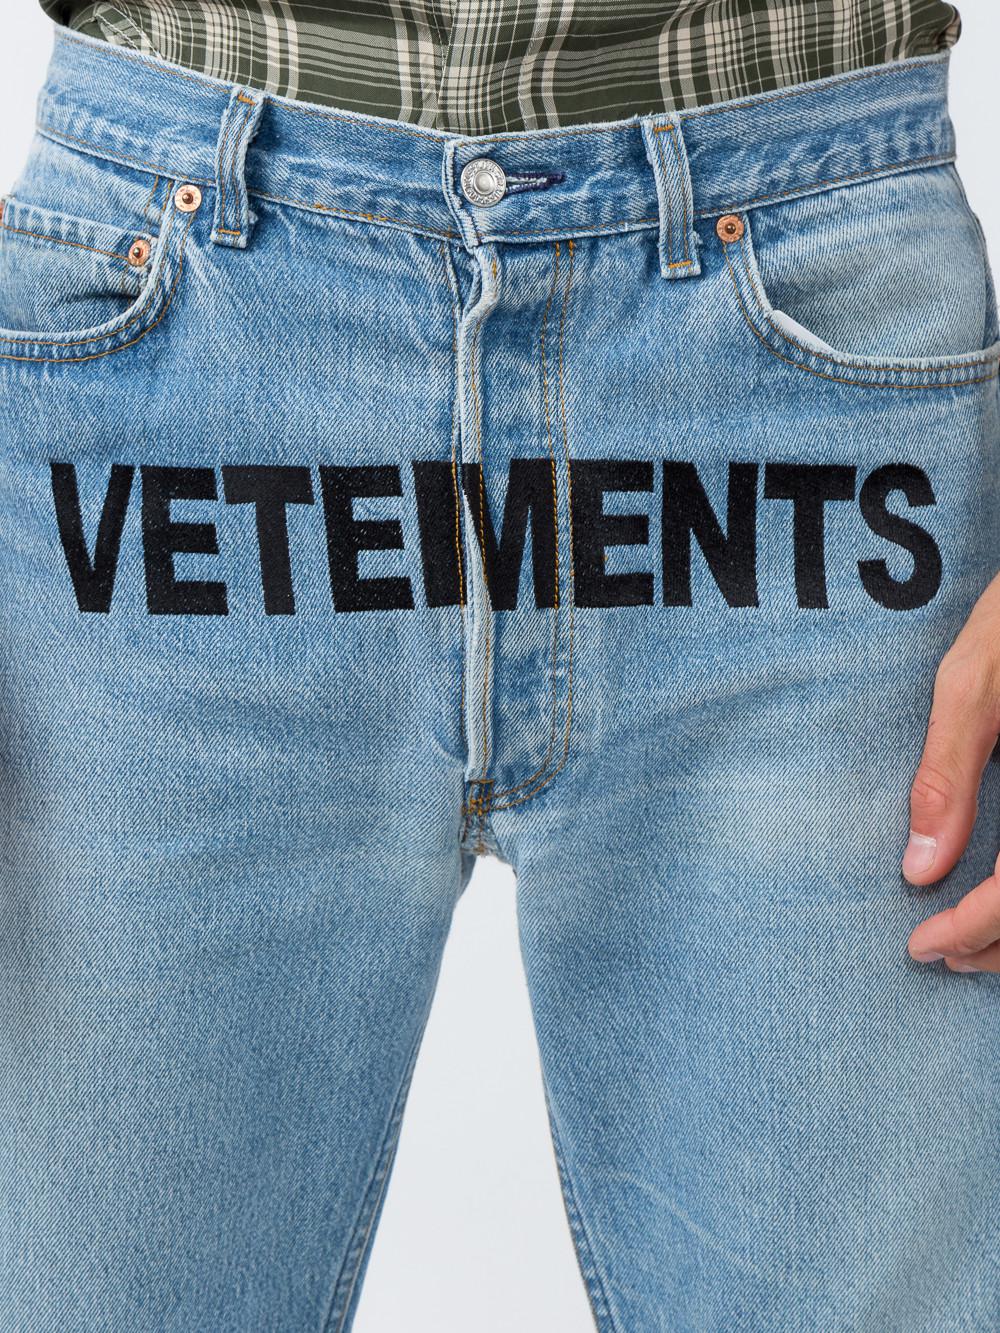 vetements print jeans